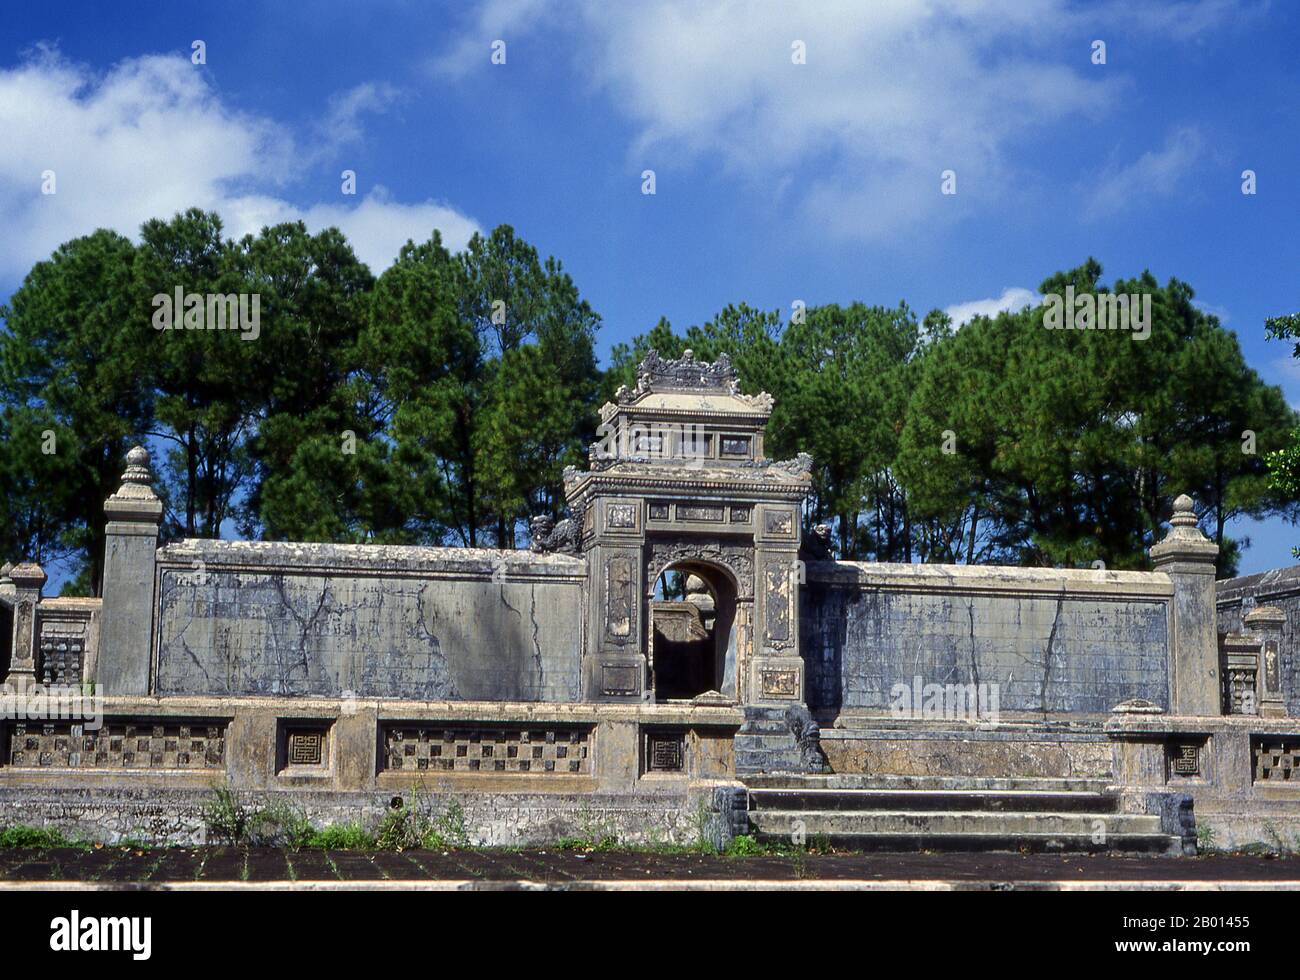 Vietnam: Tomba dell'imperatore Dong Khanh, Hue. Đồng Khánh (Nguyễn Phúc Ưng Kỷ, 19 febbraio 1864 – 28 gennaio 1889) è stato il 9° imperatore della dinastia Nguyễn del Vietnam. Regnò per 3 anni tra il 1885 e il 1889, e fu considerato uno degli imperatori più disprezzati della sua epoca. Hue fu la capitale imperiale della dinastia Nguyen tra il 1802 e il 1945. Le tombe di numerosi imperatori si trovano nella città e nei dintorni e lungo il fiume profumo. Hue è un sito patrimonio dell'umanità dell'UNESCO. Foto Stock